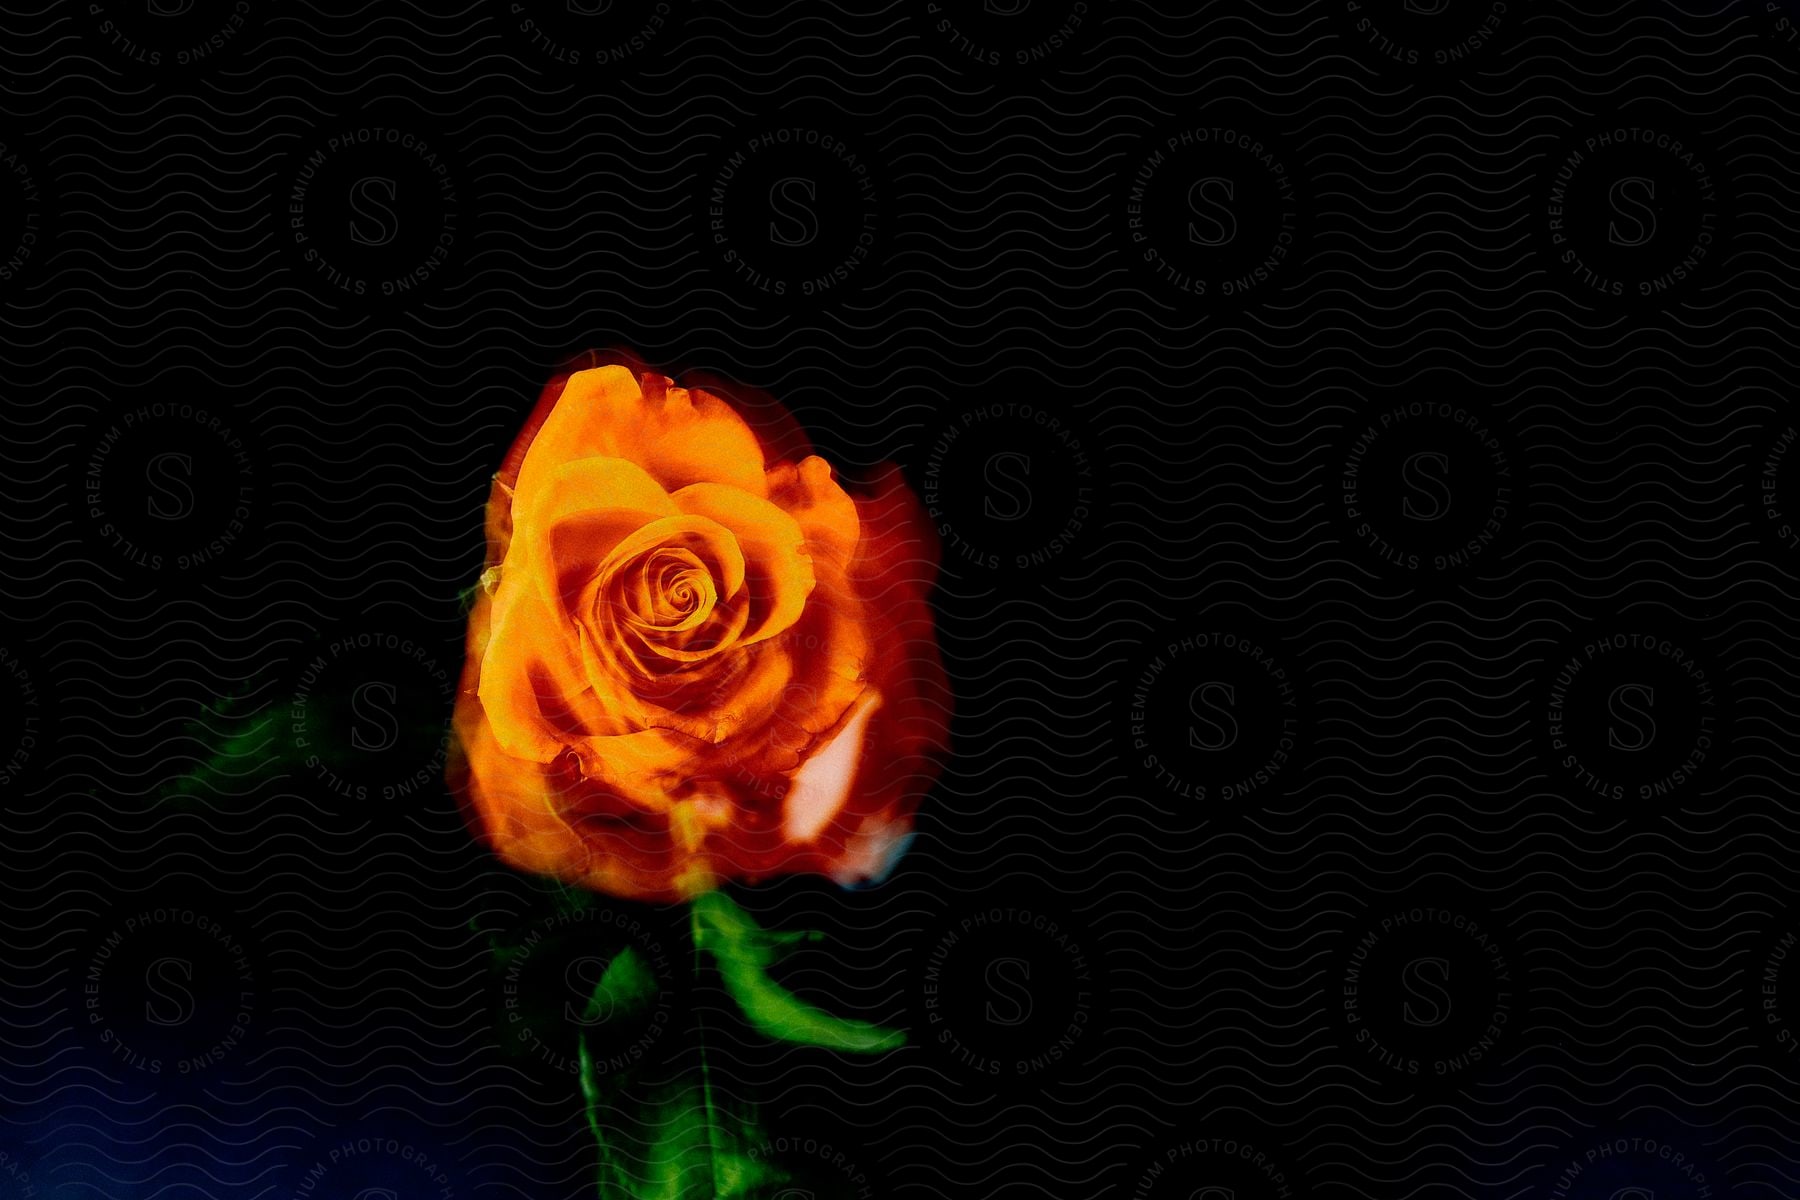 A dark photograph of a rose flower